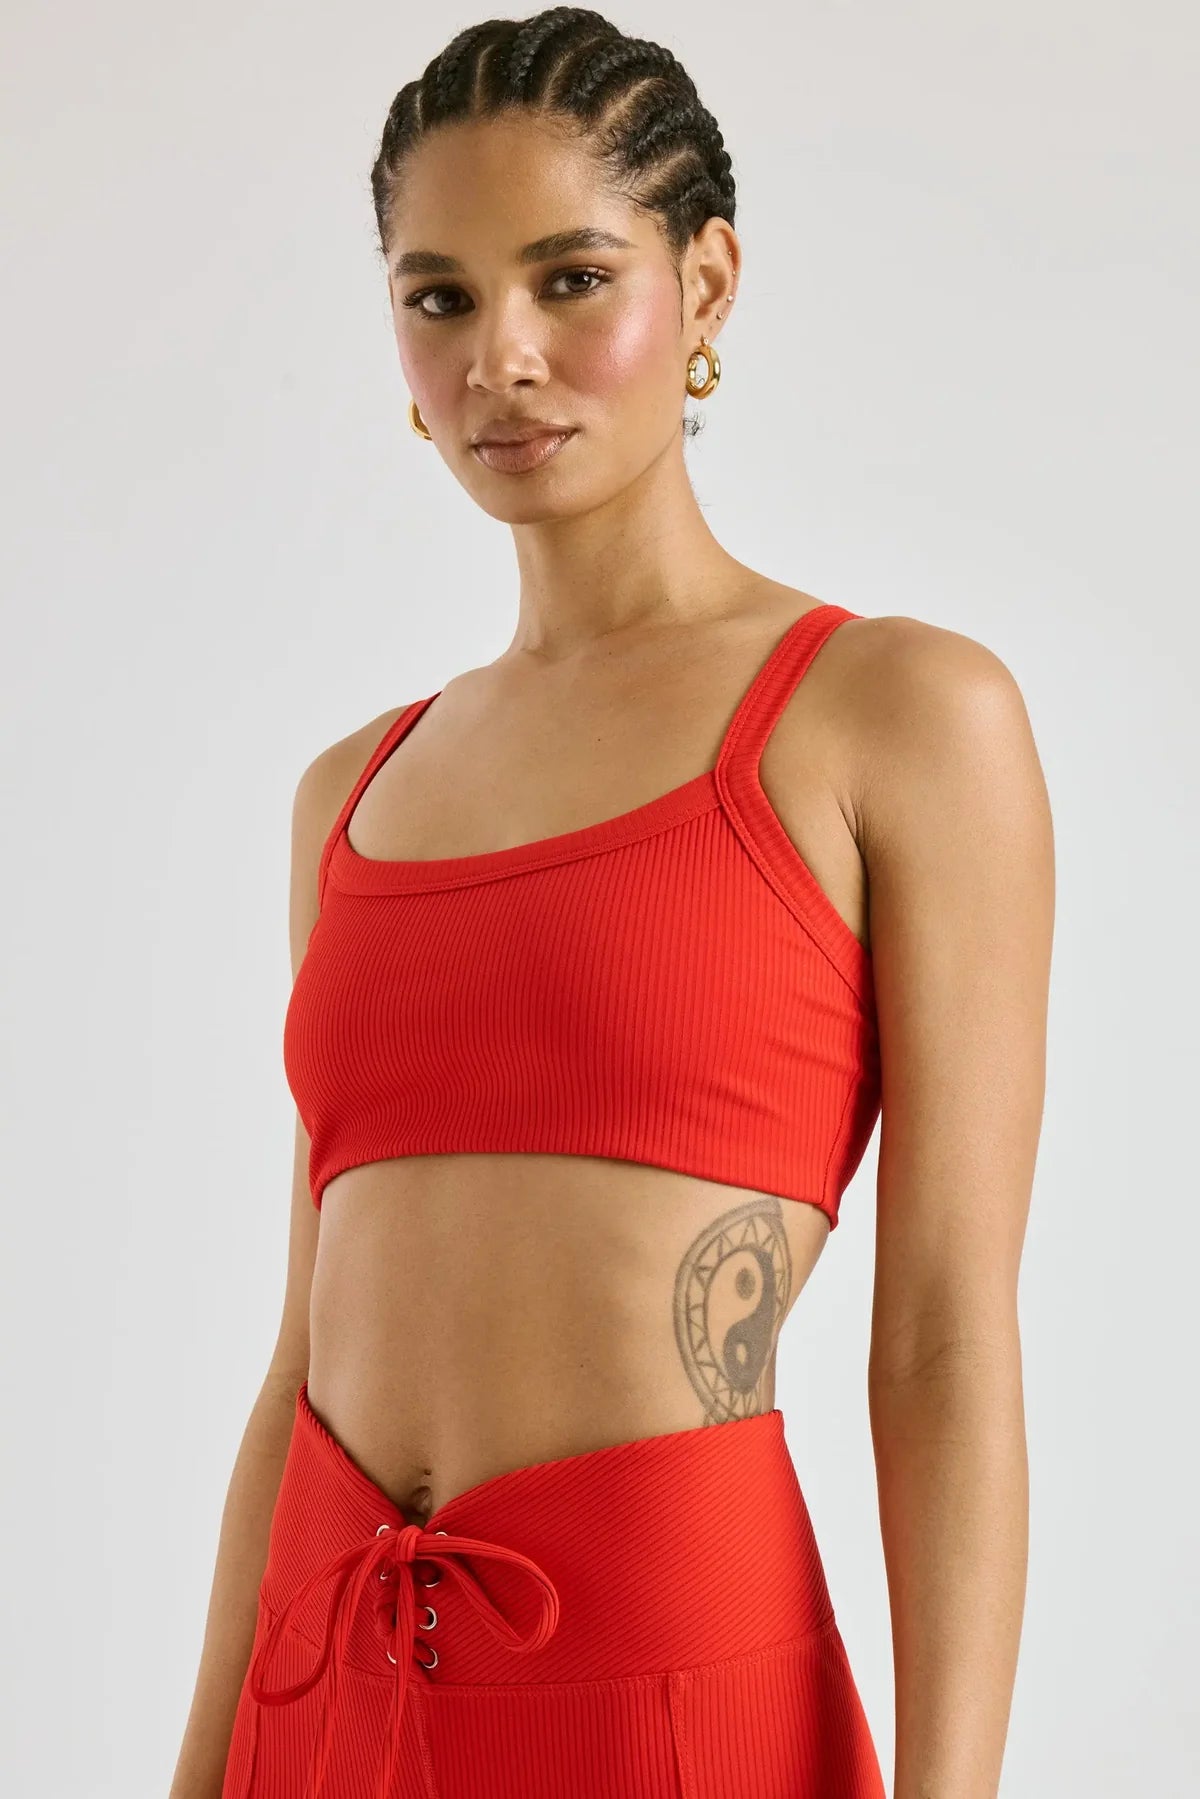 alo Yoga Mantra long sleeve shirt for women – Soccer Sport Fitness